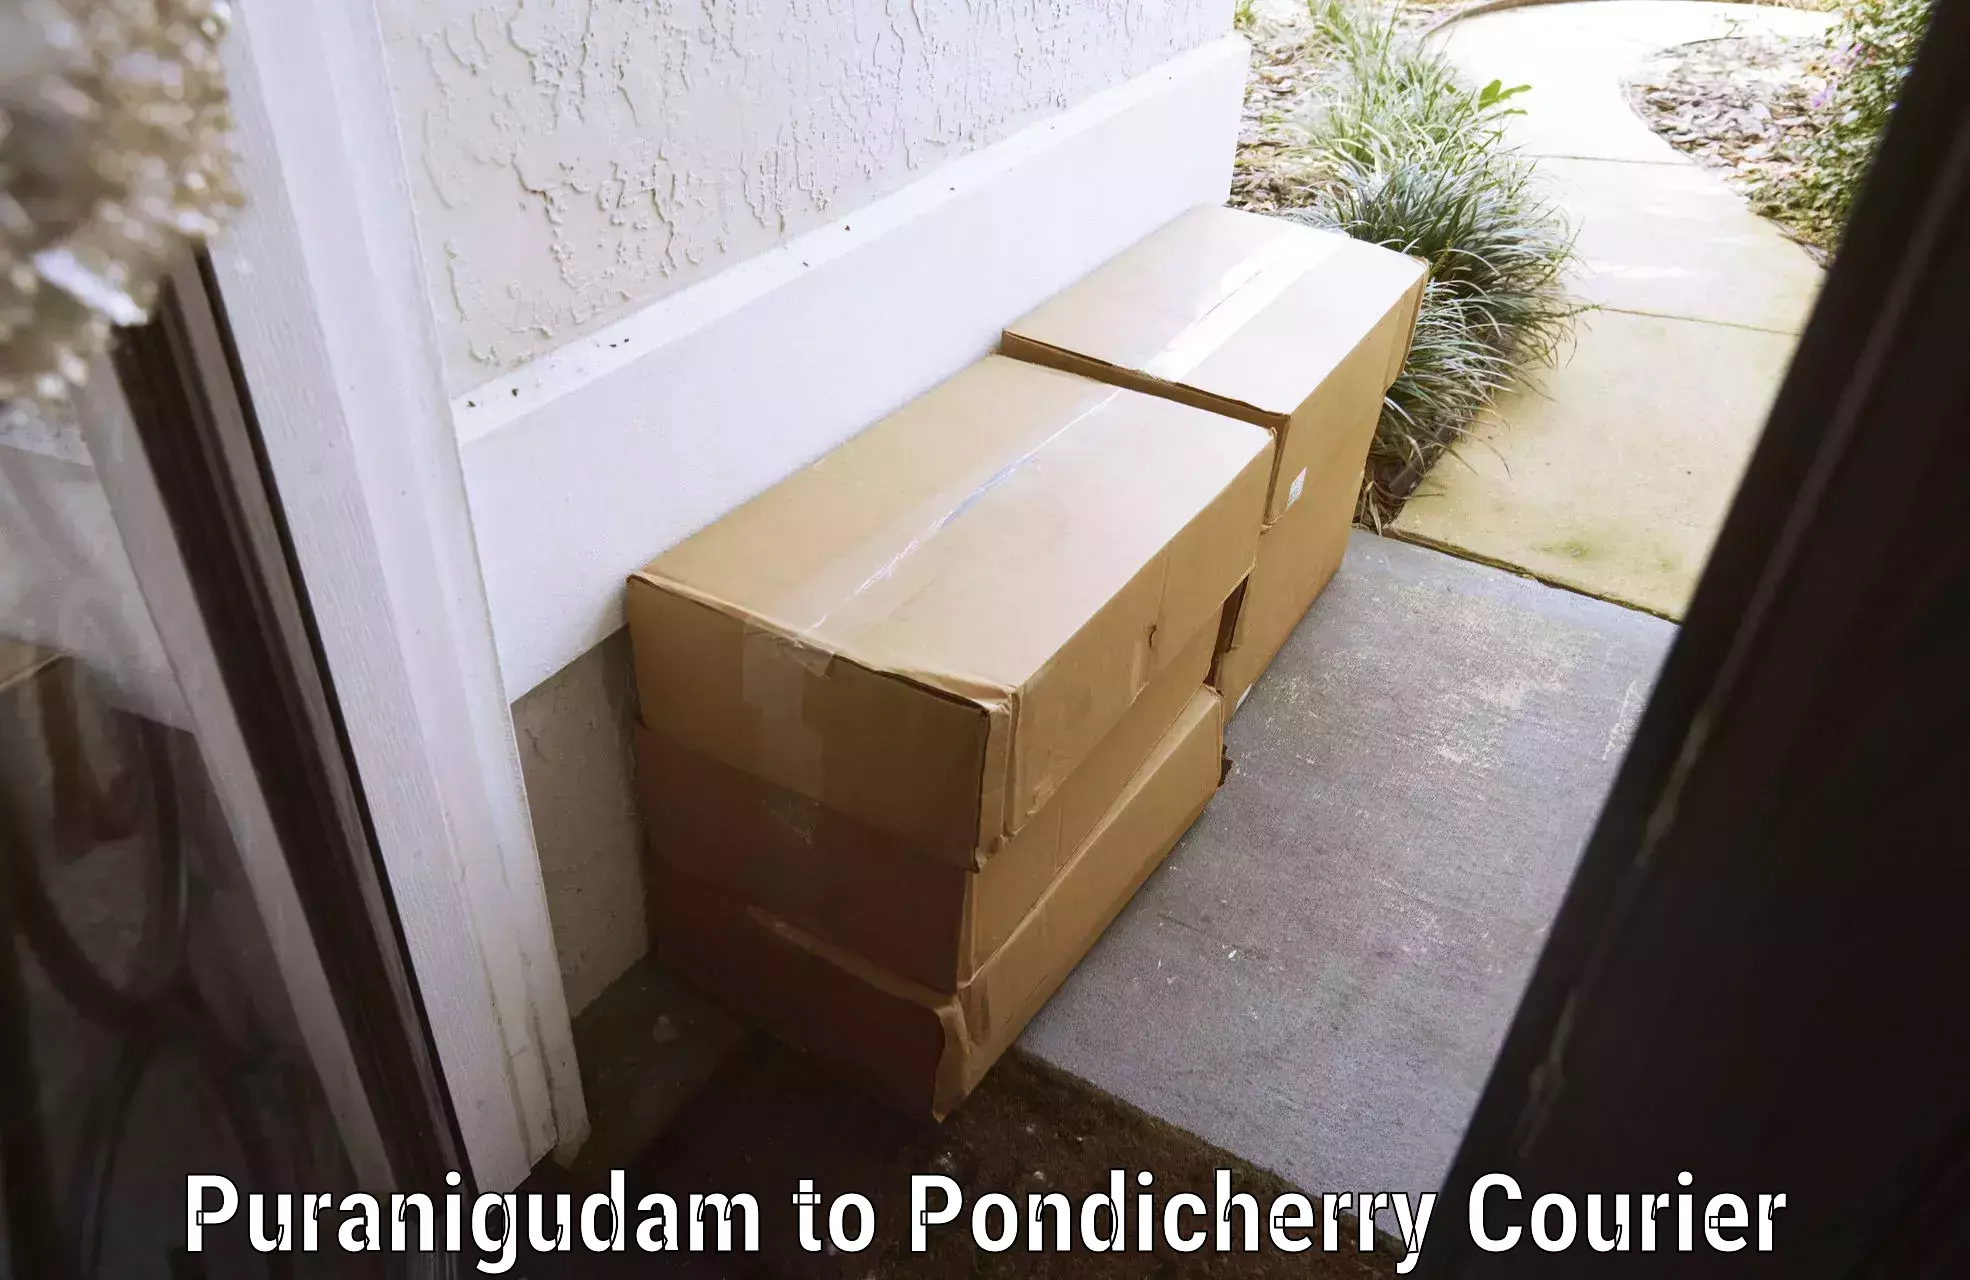 Baggage delivery scheduling Puranigudam to Pondicherry